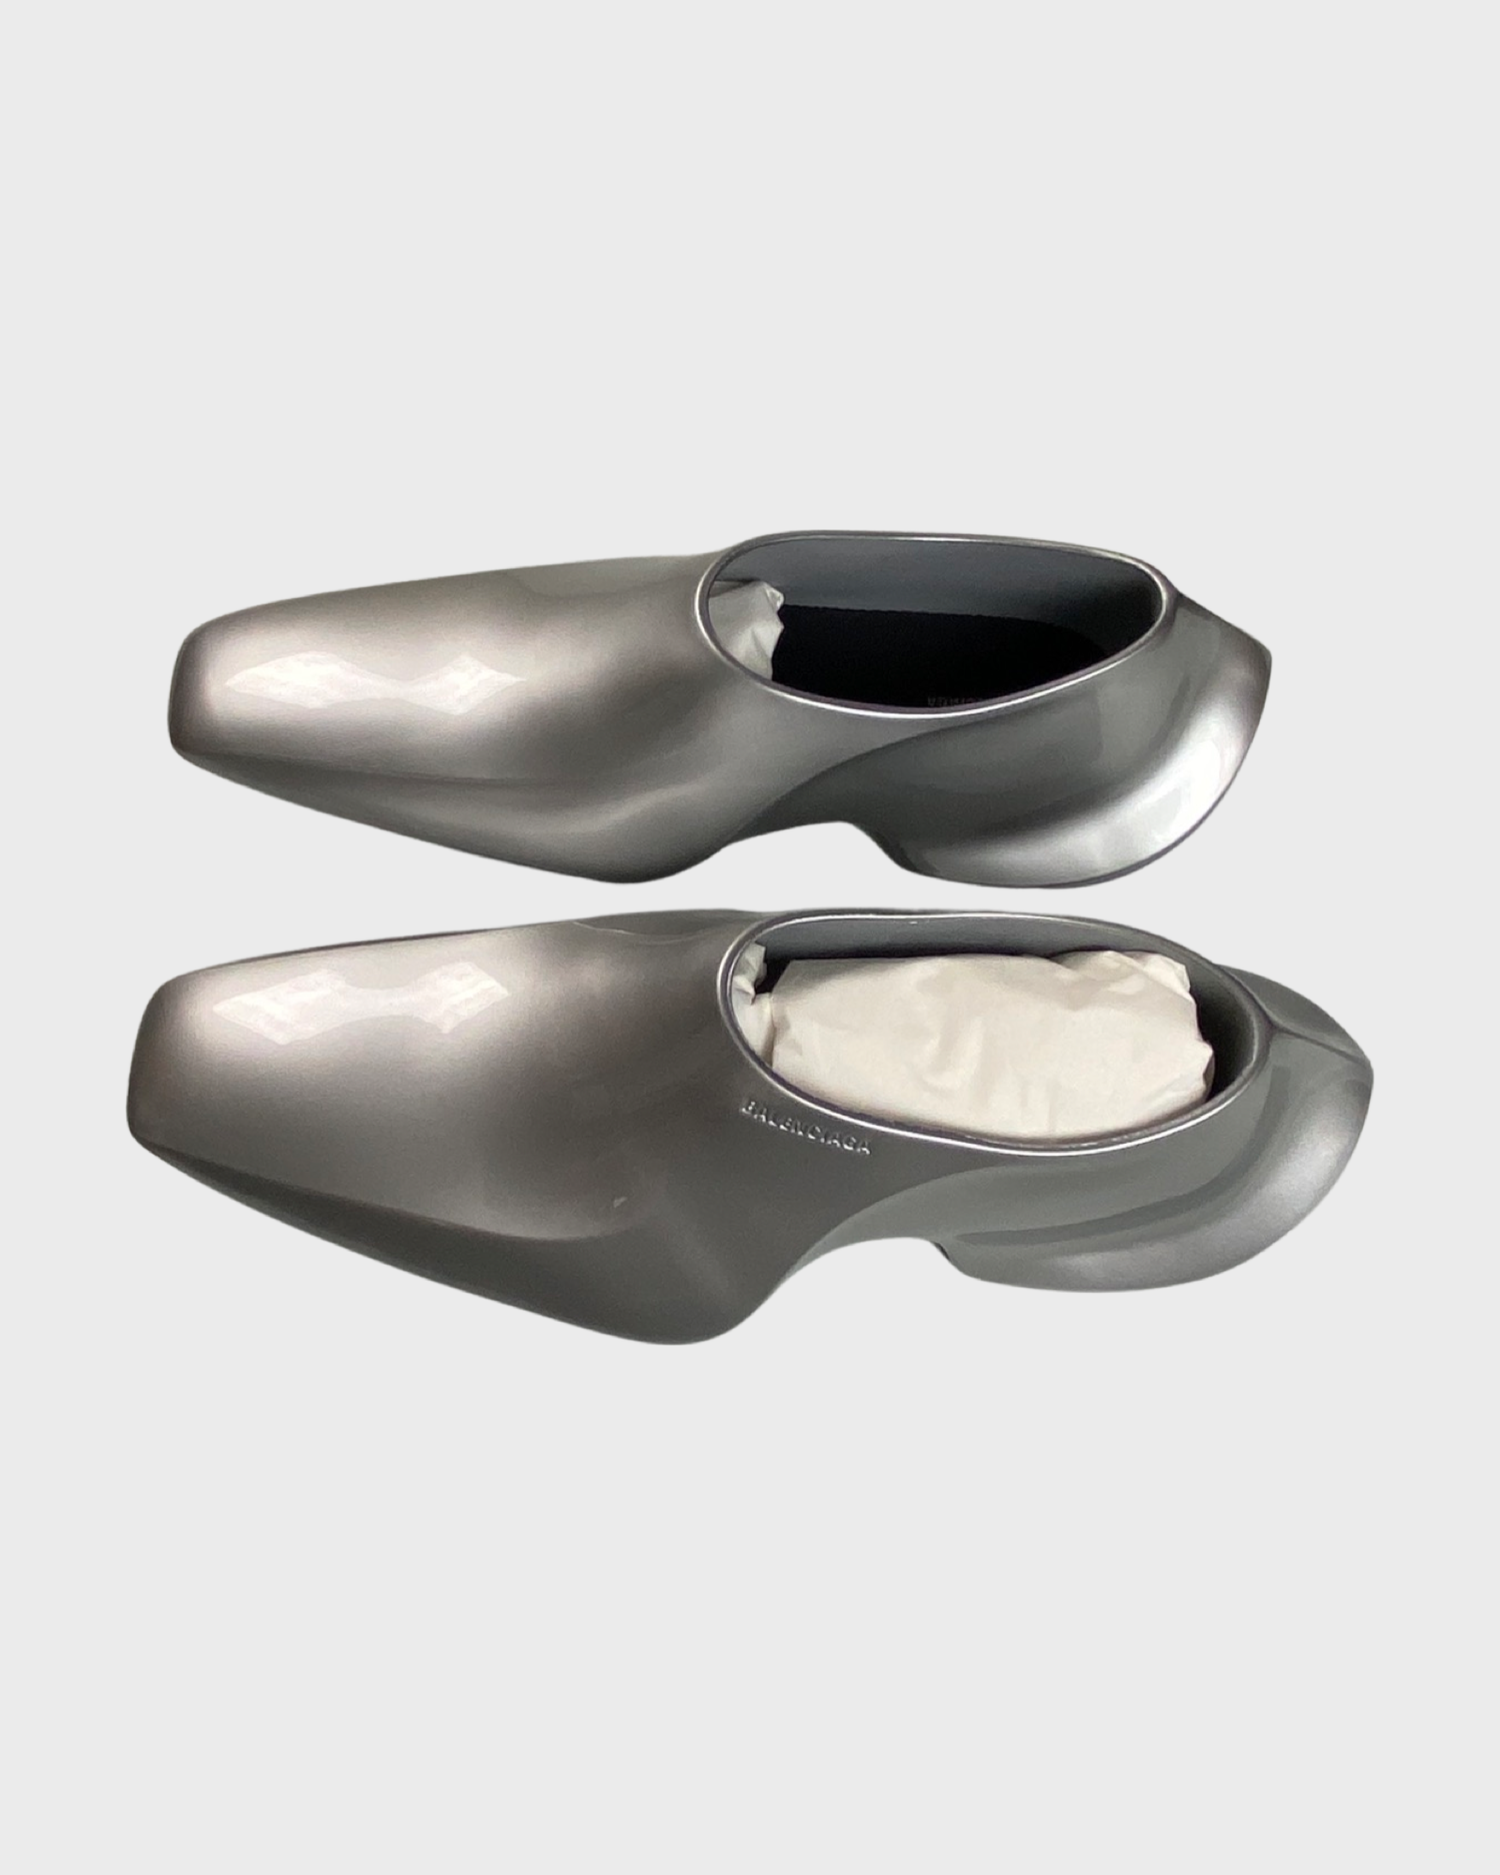 Balenciaga Space shoes in Silver SZ:42 – Bankofgrails